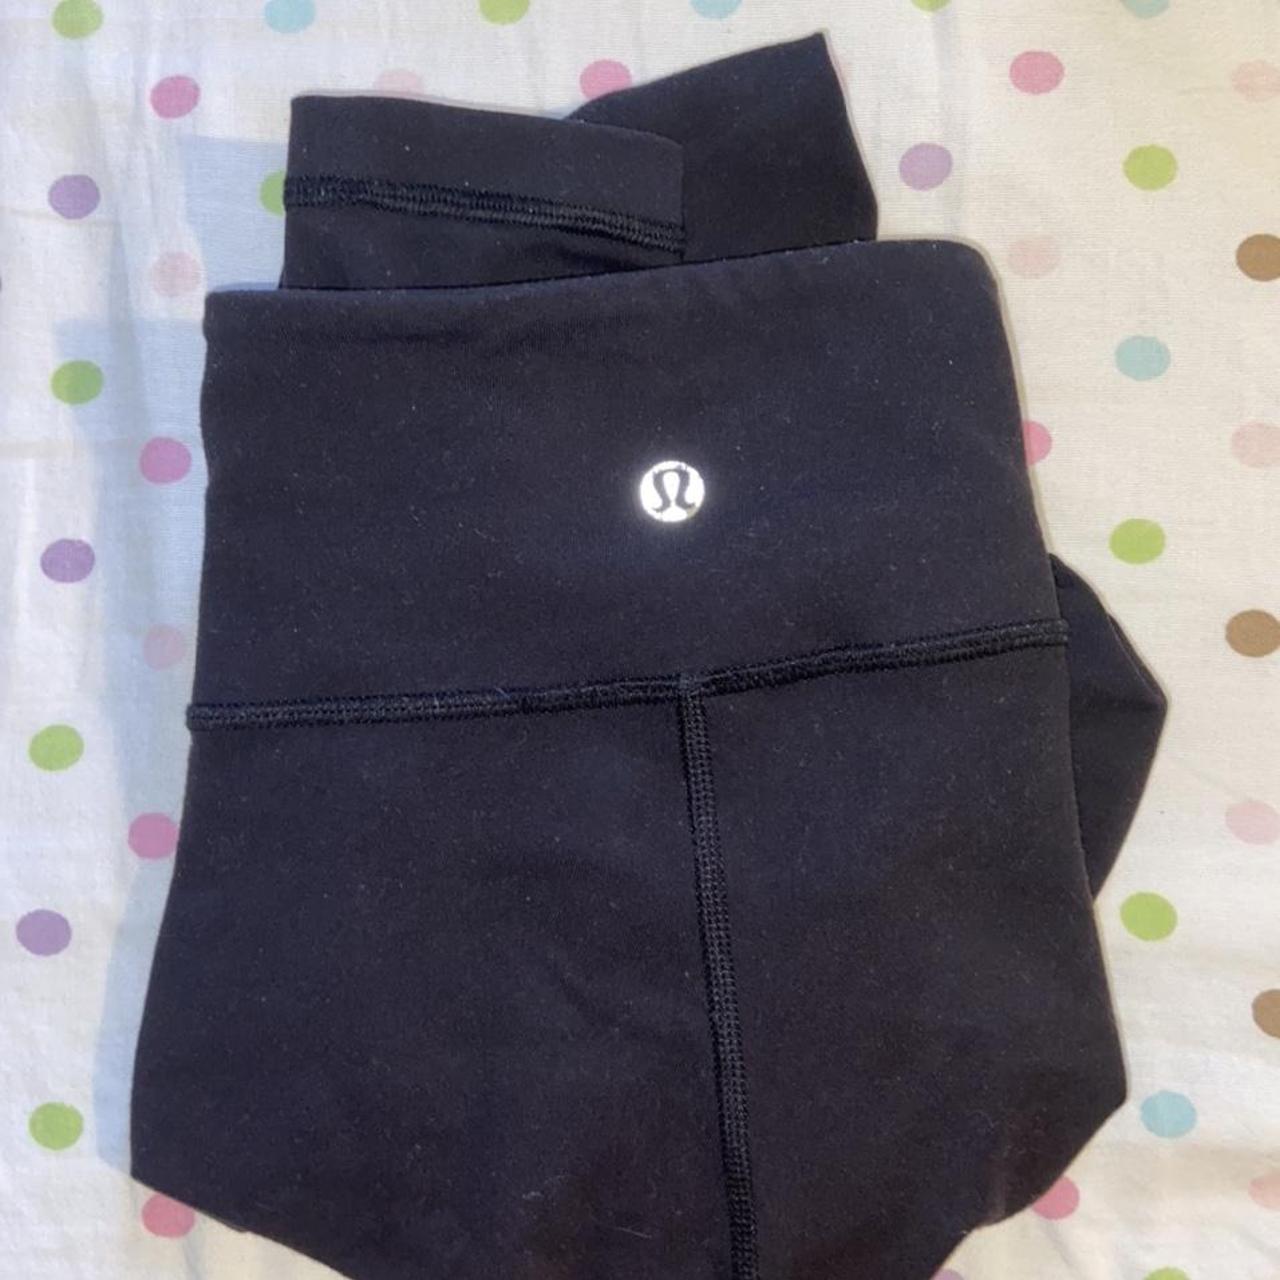 Plain black full length lululemon align leggings 🖤 - Depop